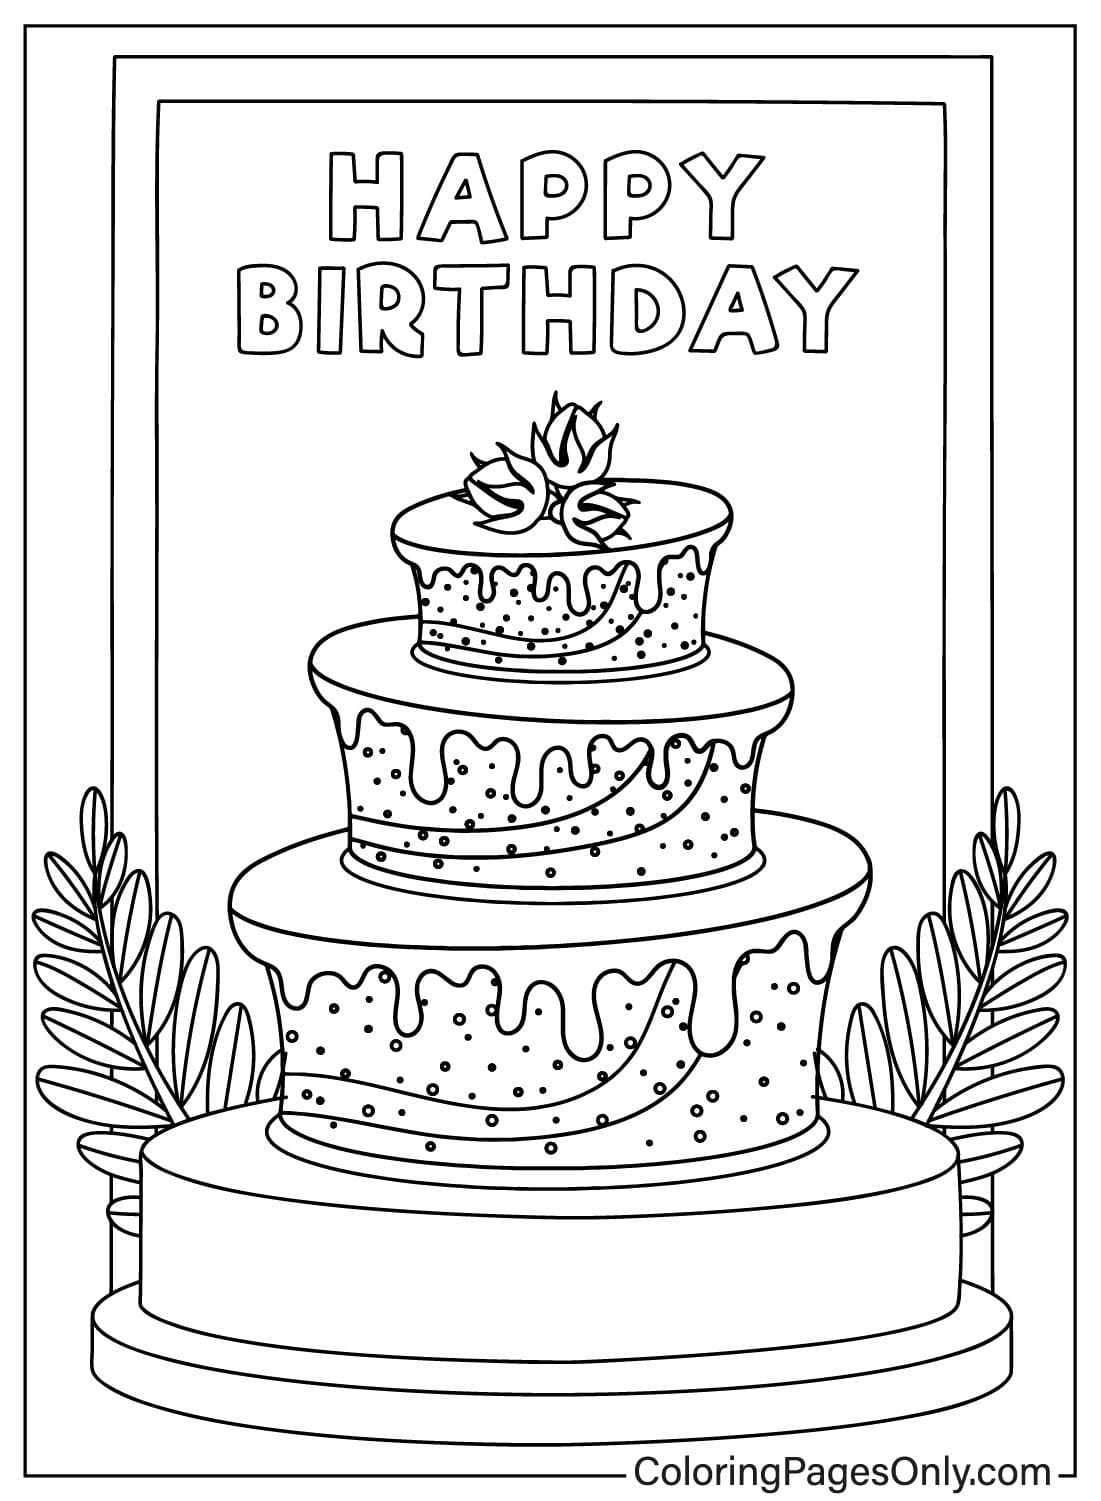 Картинка для торта ко дню рождения, которую можно раскрасить из торта ко дню рождения